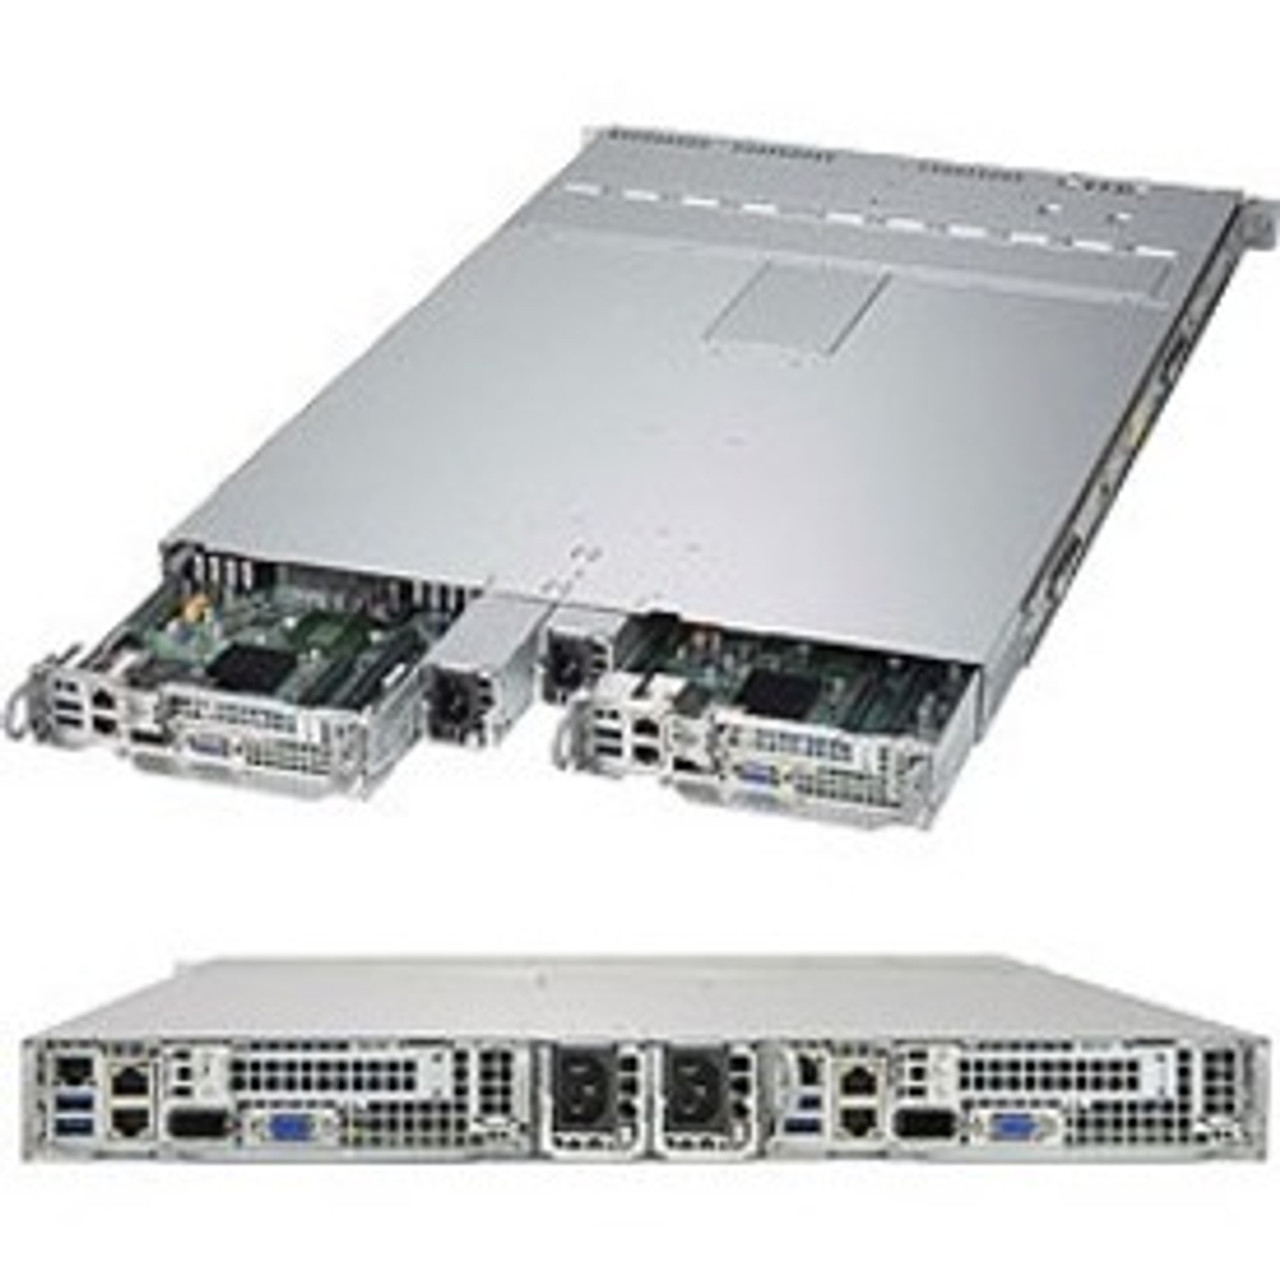 SuperMicro SuperServer 1028TP-DTTR Barebone System - 1U Rack-mountable - Socket LGA 2011-v3 - 2 x Processor Support - SYS-1028TP-DTTR